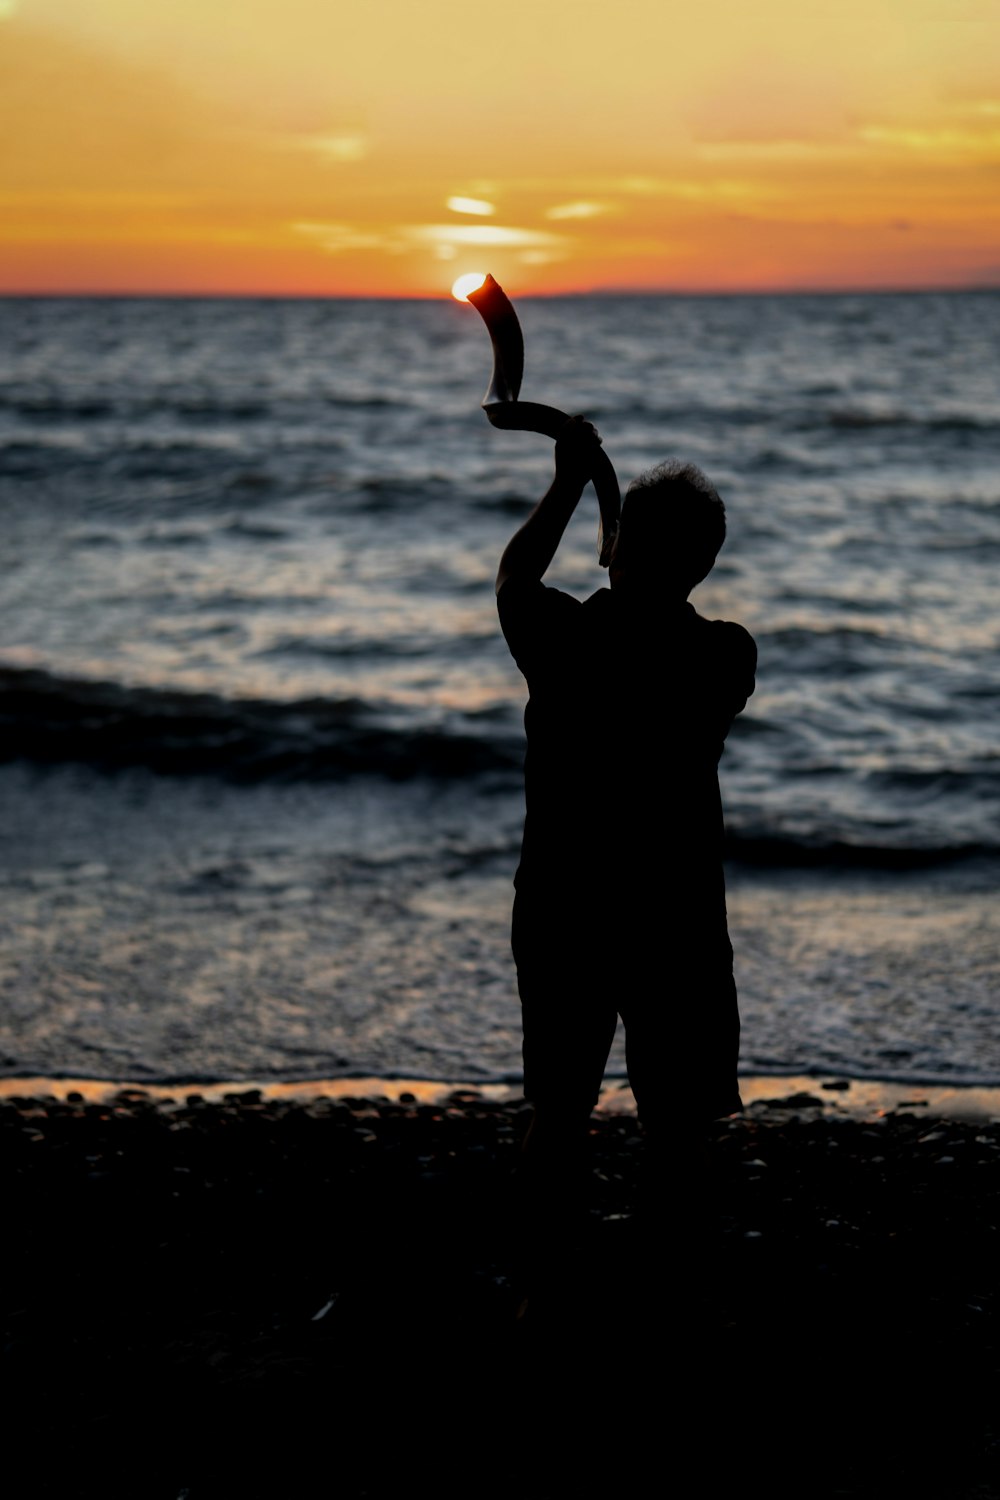 Una persona parada en una playa sosteniendo una cometa